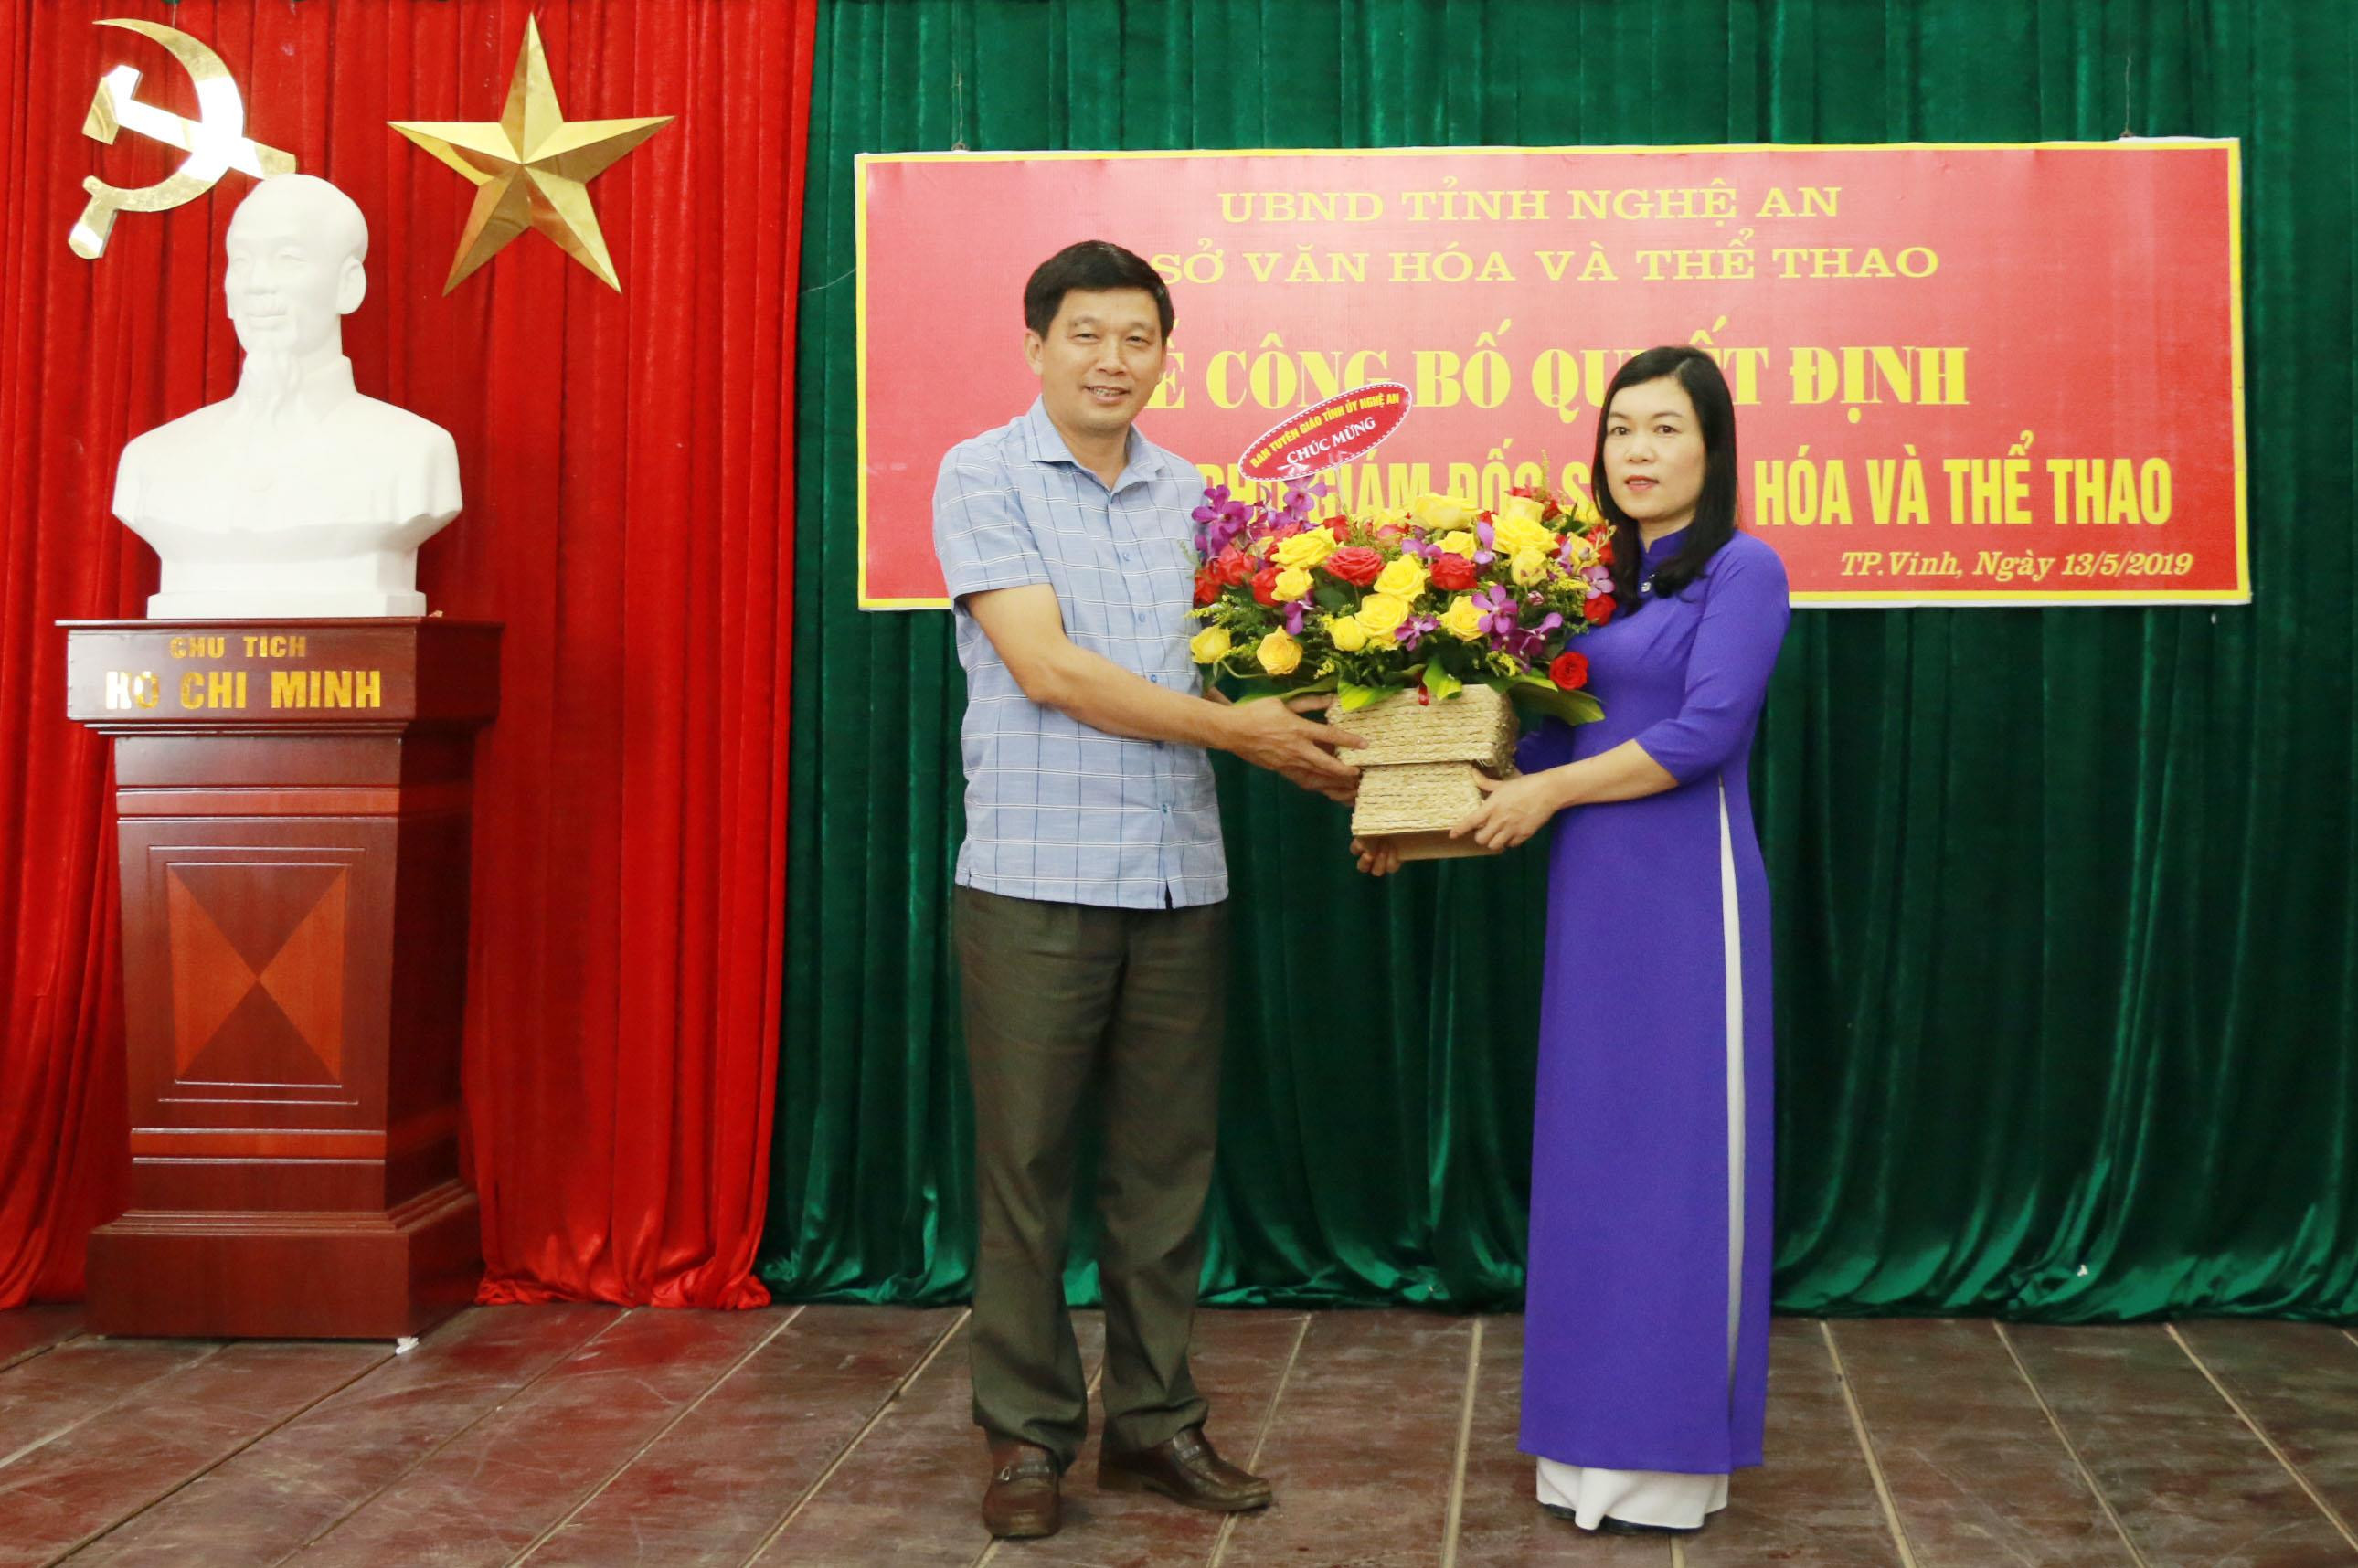 Đồng chí Kha Văn Tám tặng họa chúc mừng Phó Giám đốc Sở Văn hóa và Thể thao. Ảnh: Mỹ Hà